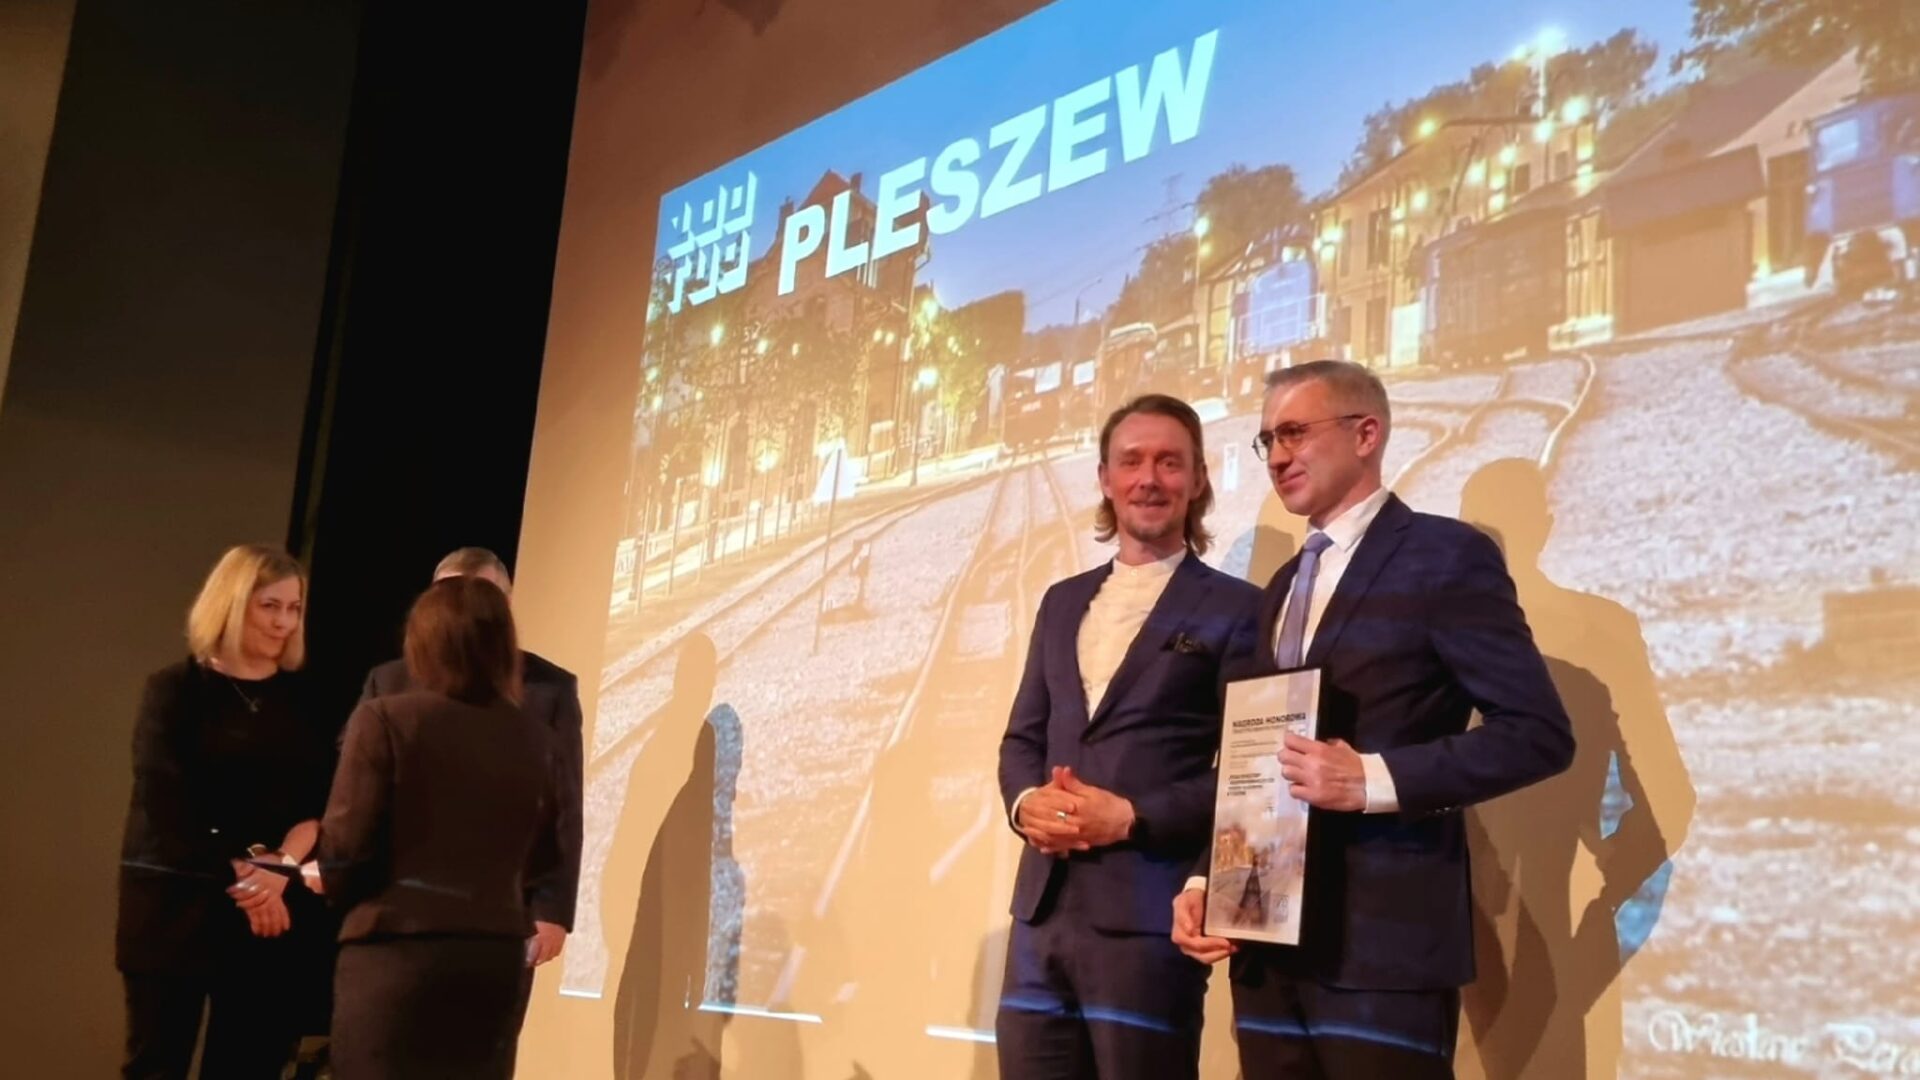 Przedstawiciele Miasta i Gminy Pleszew odbierają nagrodę za najlepiej zagospodarowaną przestrzeń publiczną od Towarzystwa Urbanistów Polskich